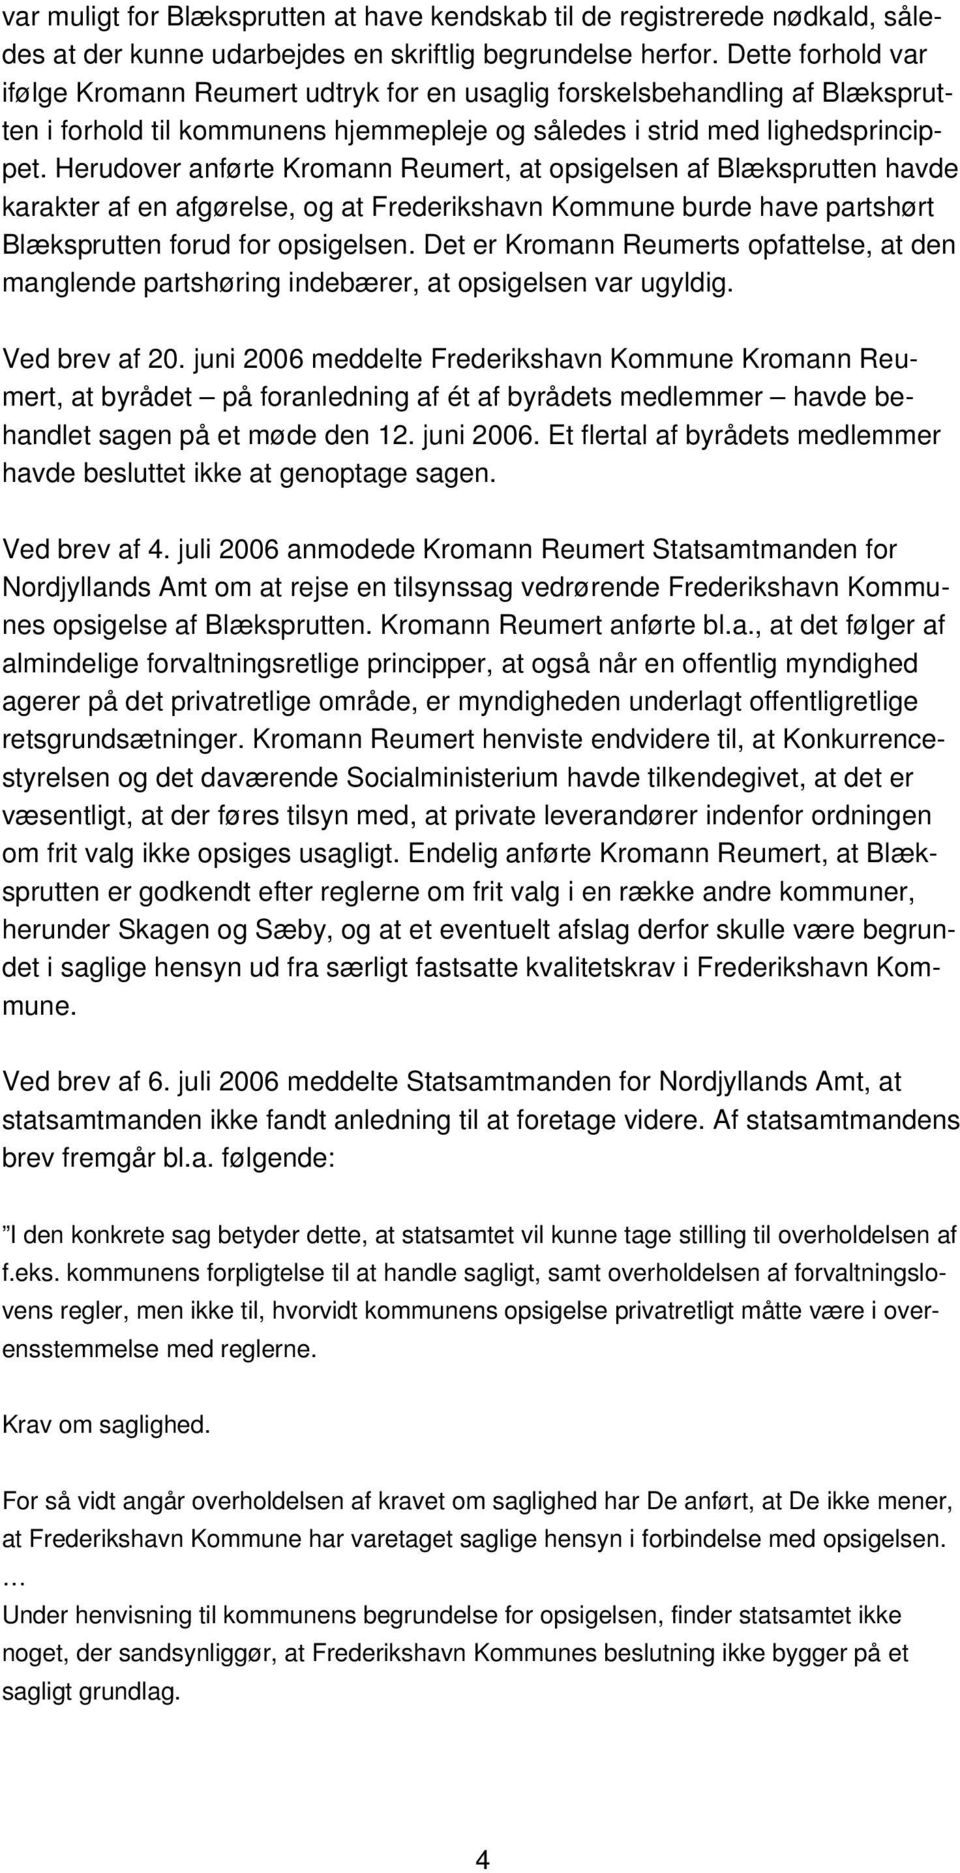 Herudover anførte Kromann Reumert, at opsigelsen af Blæksprutten havde karakter af en afgørelse, og at Frederikshavn Kommune burde have partshørt Blæksprutten forud for opsigelsen.